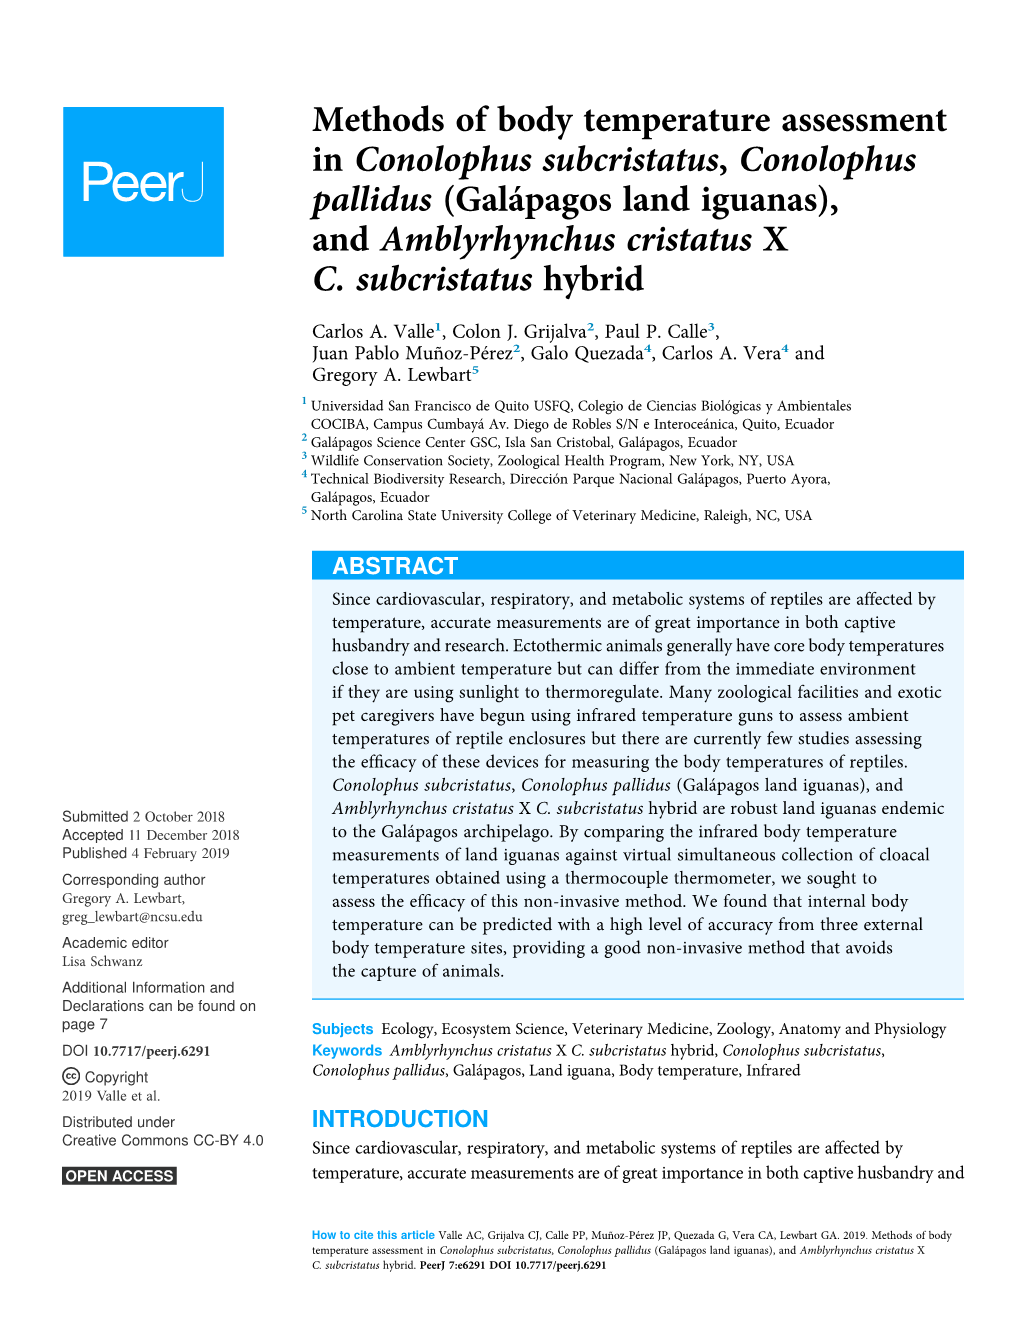 Methods of Body Temperature Assessment in Conolophus Subcristatus, Conolophus Pallidus (Galápagos Land Iguanas), and Amblyrhynchus Cristatus X C